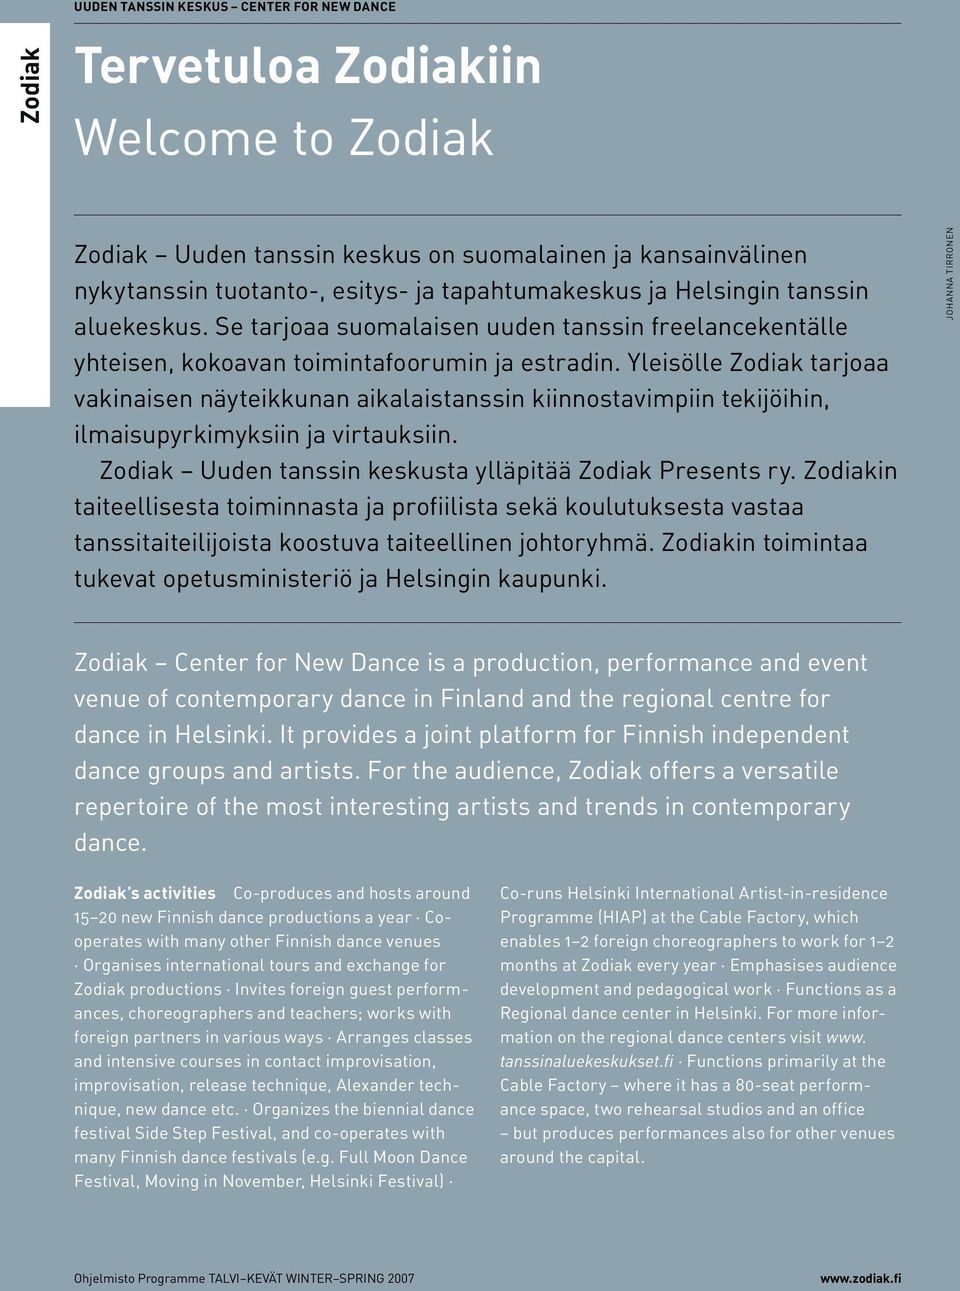 Yleisölle Zodiak tarjoaa vakinaisen näyteikkunan aikalaistanssin kiinnostavimpiin tekijöihin, ilmaisupyrkimyksiin ja virtauksiin. Zodiak Uuden tanssin keskusta ylläpitää Zodiak Presents ry.